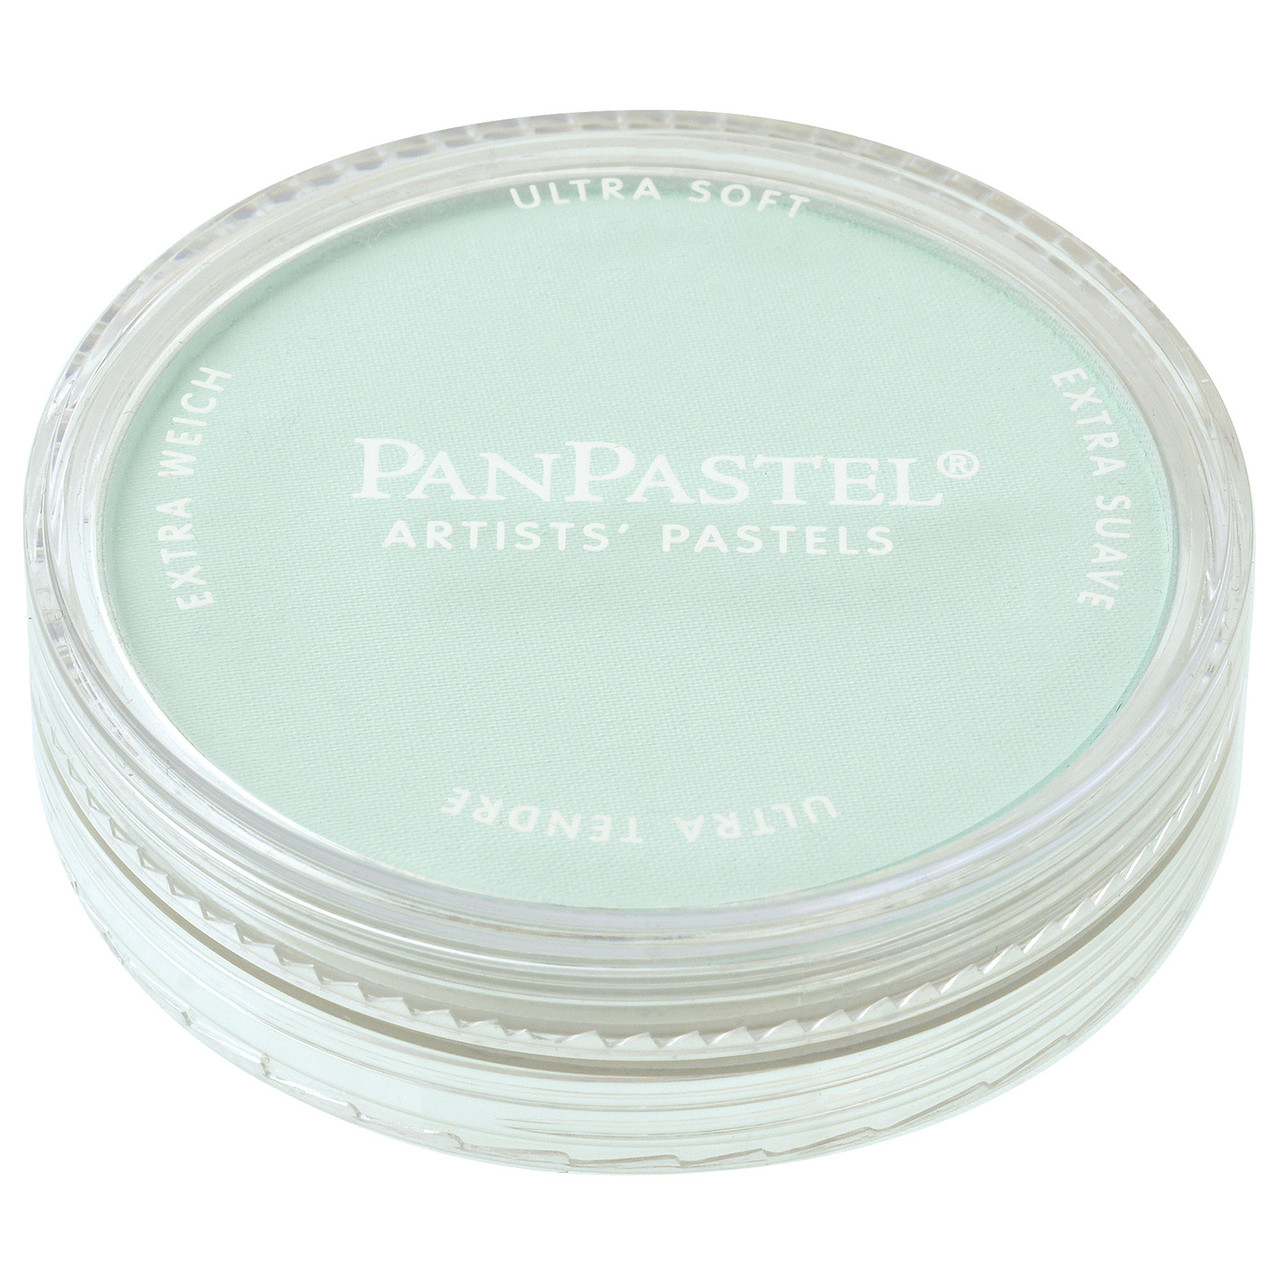 Panpastel -Phthalo Green Tint